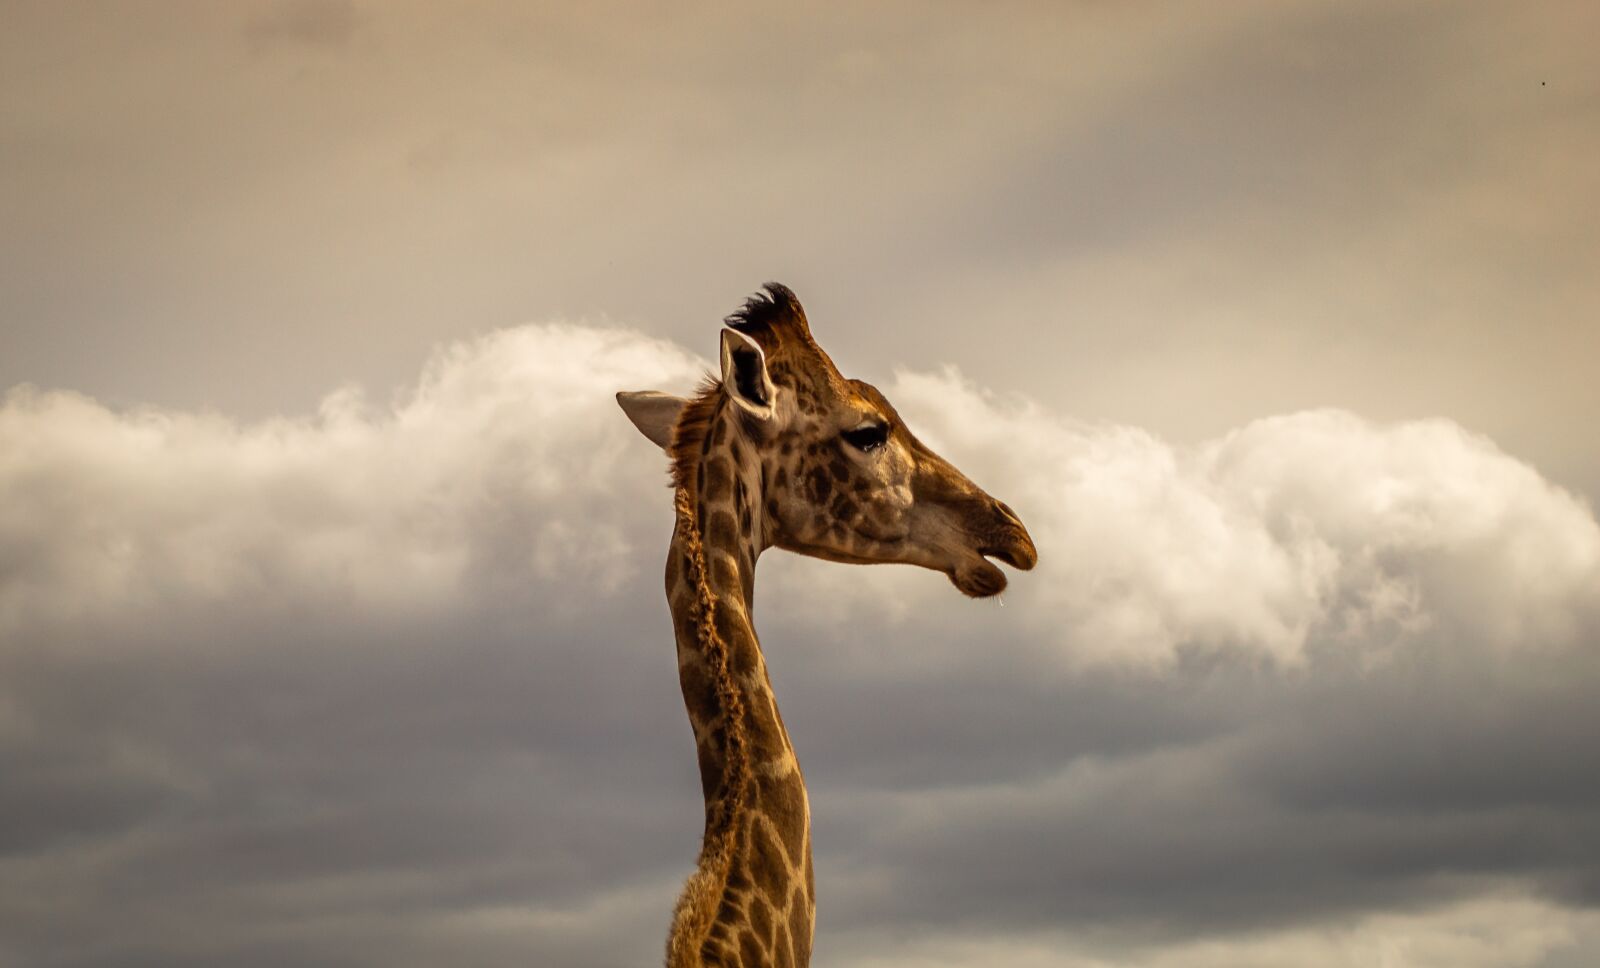 Nikon D3200 sample photo. Giraffe, portrait, safari photography